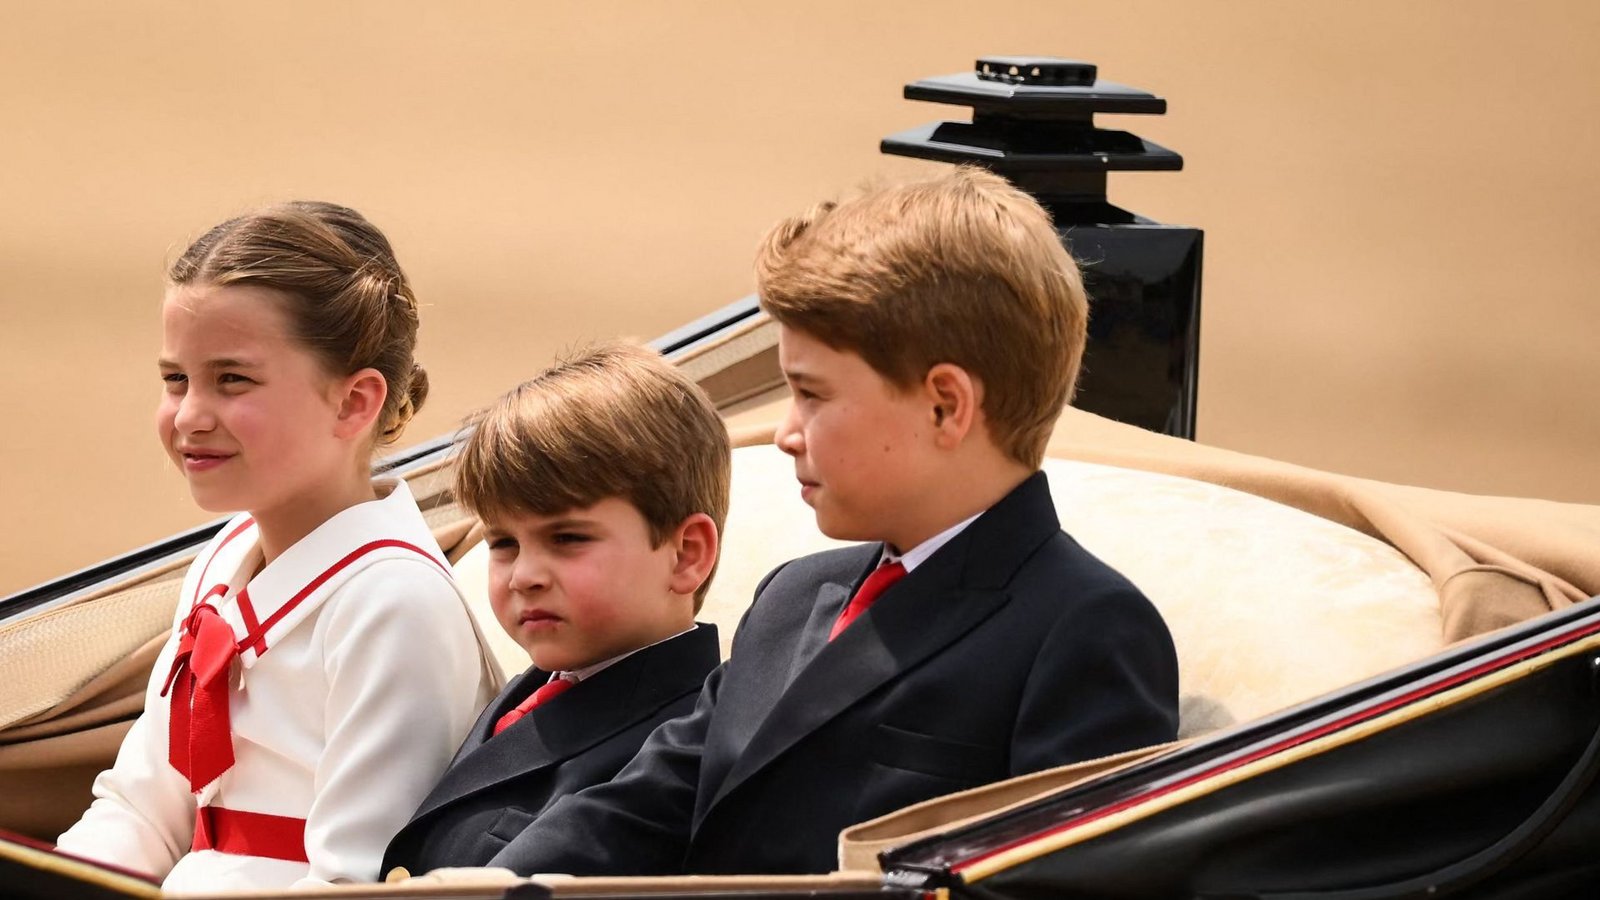 Schon zwei Mal fuhren die Wales-Kinder bei der Militärparade „Trooping the Colour“ in der Kutsche mit.Foto: AFP/DANIEL LEAL